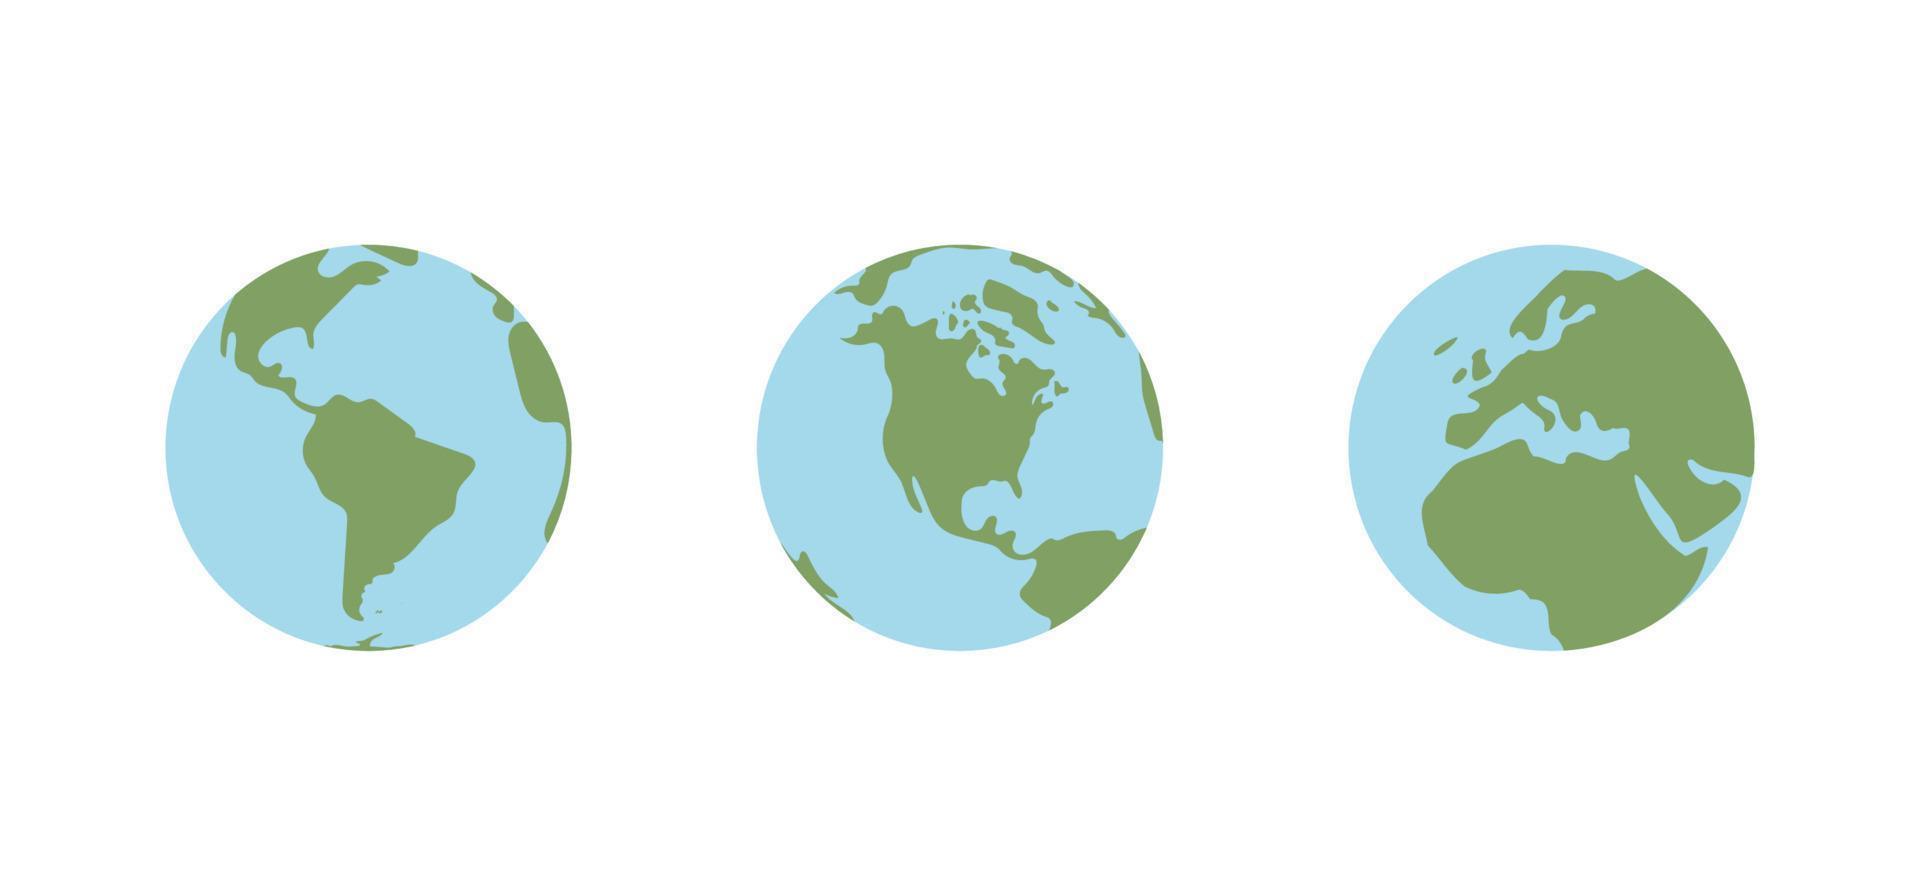 globo mondo carta geografica. pianeta terra piatto vettore illustrazione. scarabocchio carta geografica con continenti e oceani.